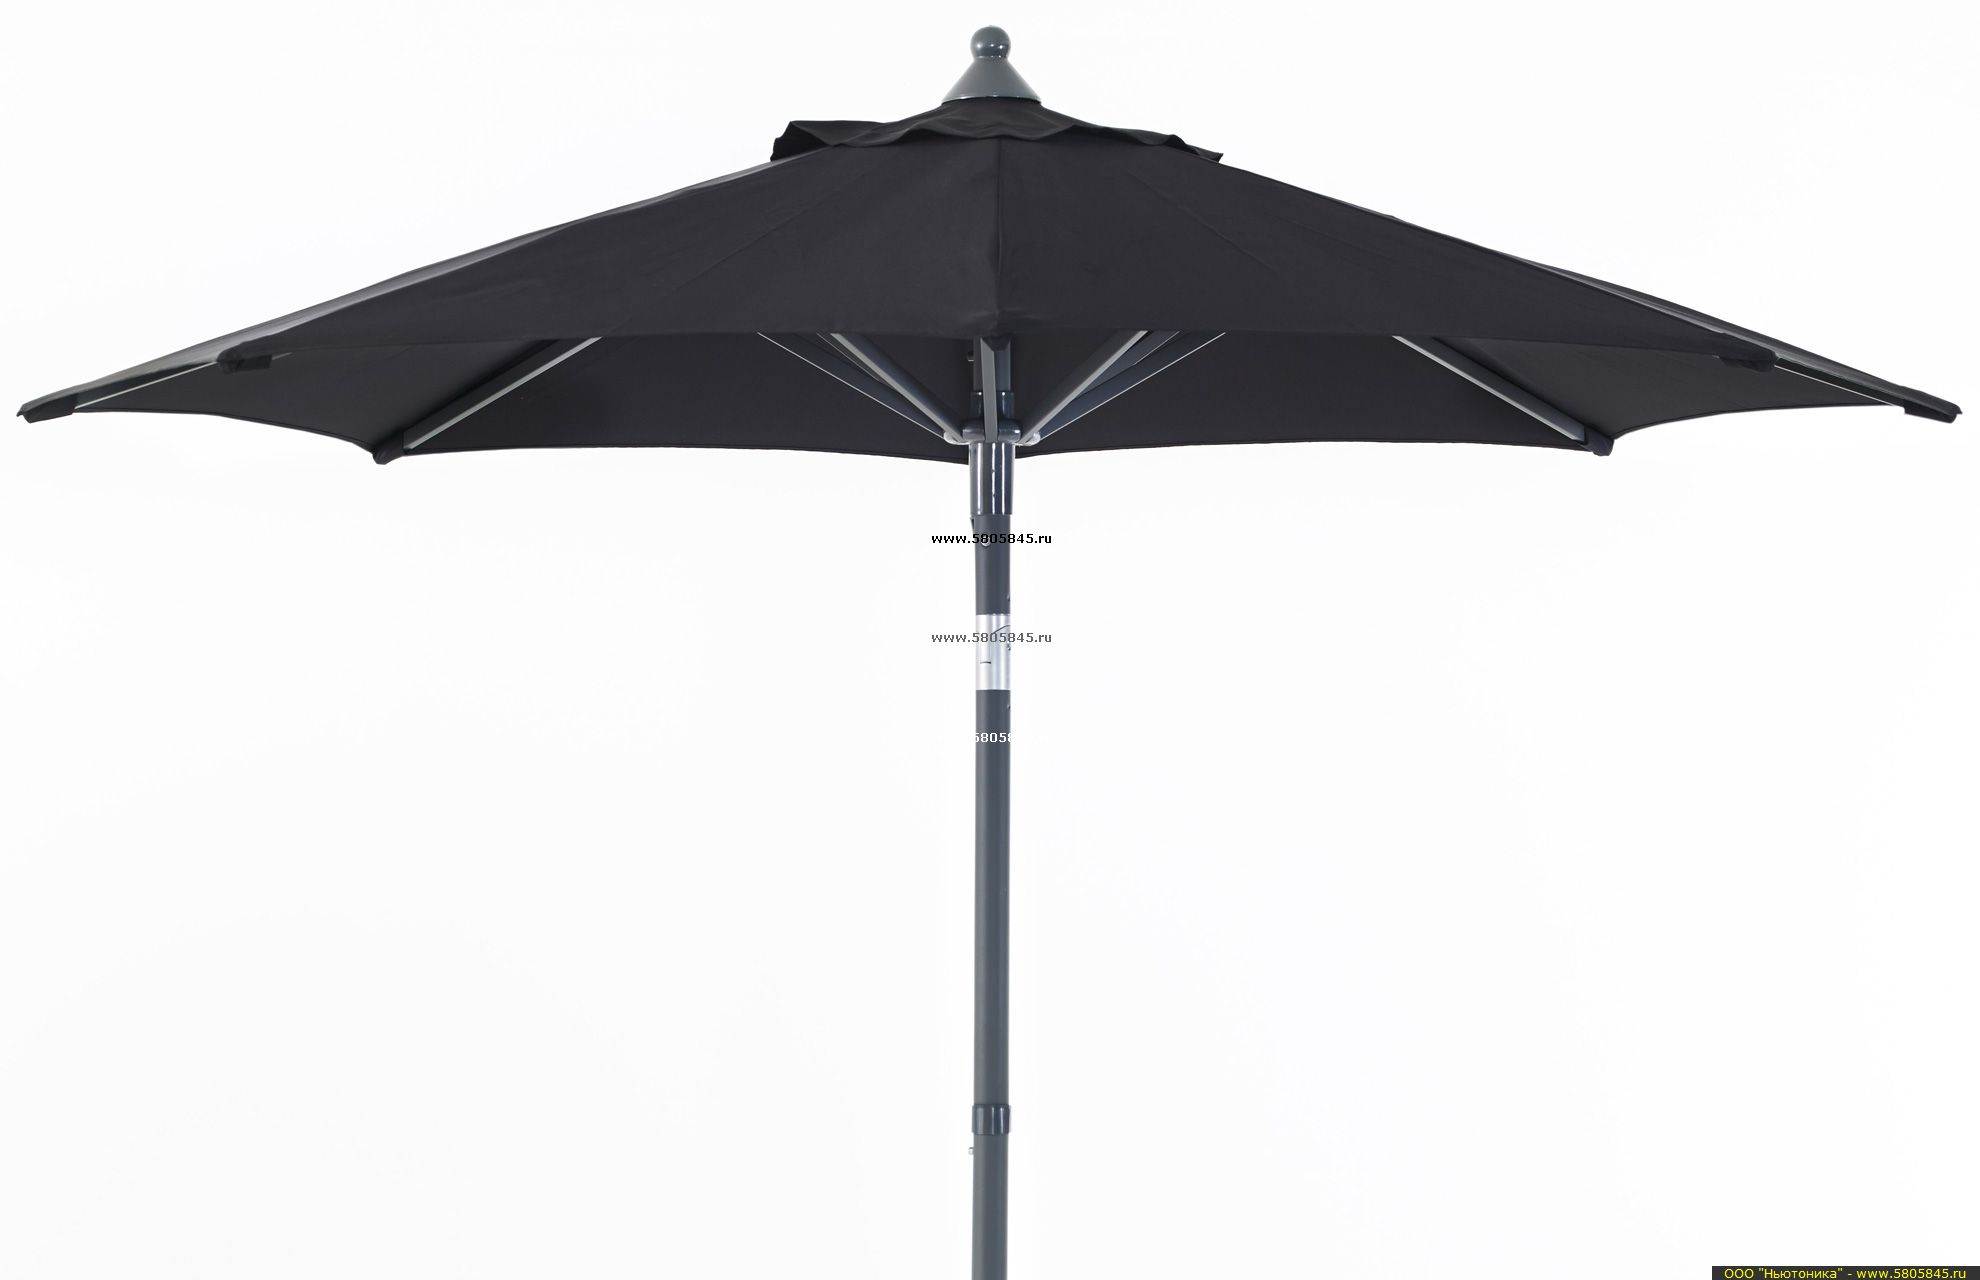 Зонтик уличный. Садовый зонт Garden way а002-3500. Уличный зонт Giotto braccio 300x400. Уличный зонт Larus, 6x5 м. Уличный зонт Larus, 3.6x5 м.